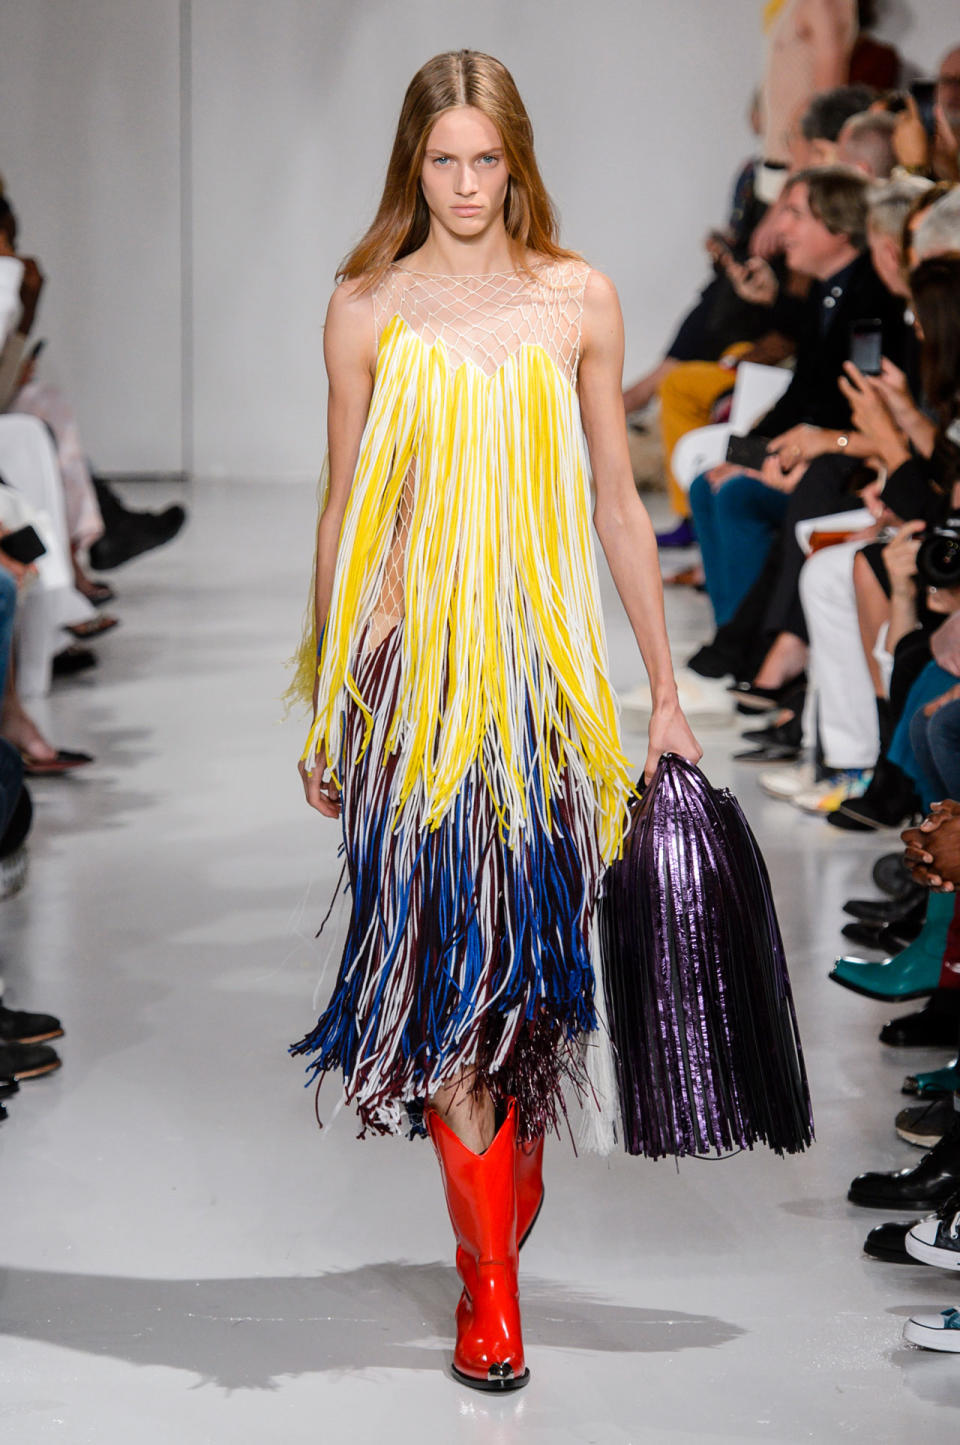 <p>Ein schulterfreies Fransenkleid in Gelb und Blau bei der Frühjahr/Sommer 18 Modenschau von Calvin Klein. (Bild: ImaxTree) </p>